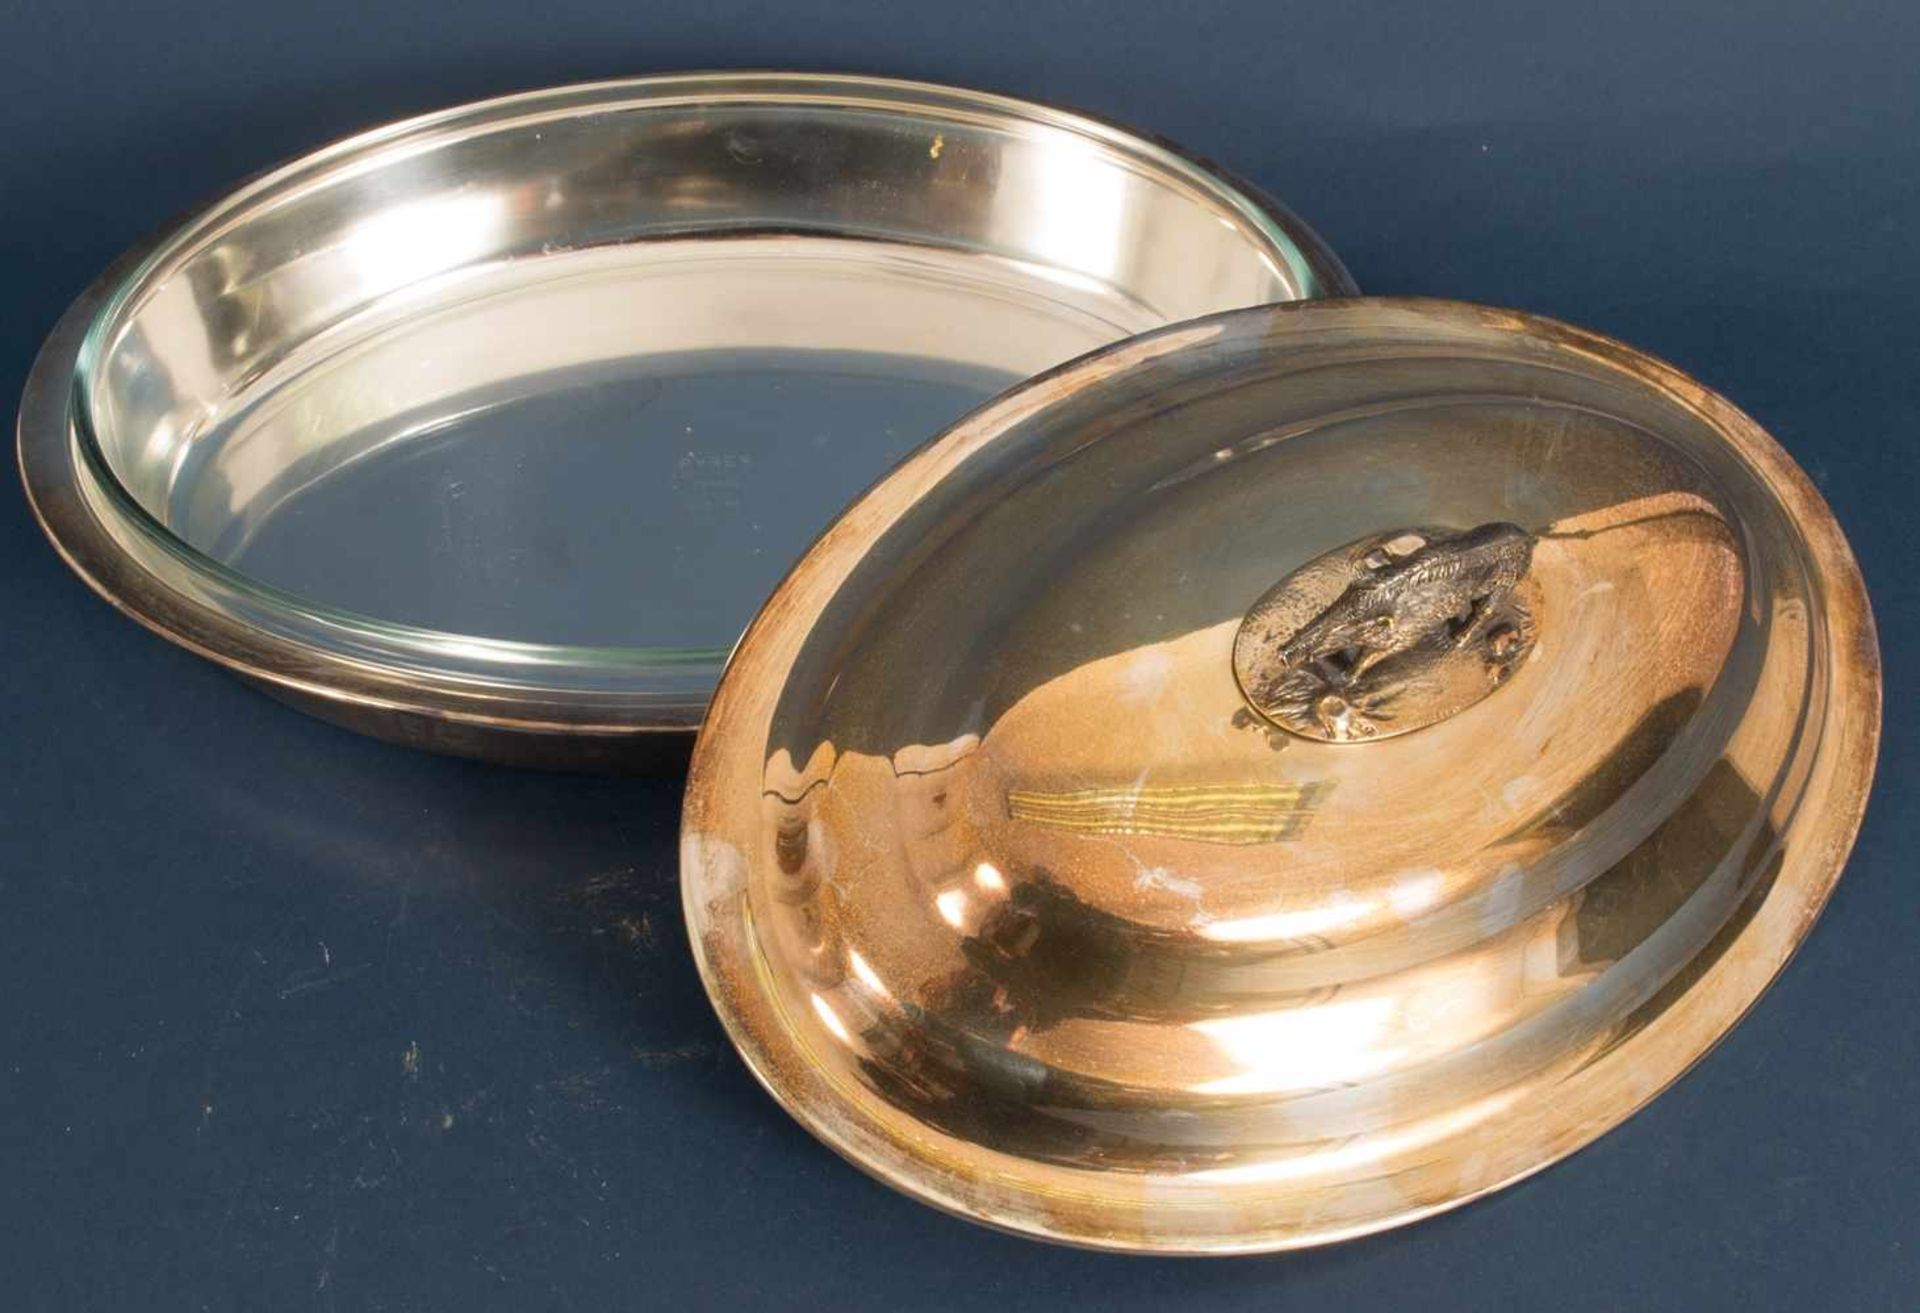 Ovale Deckelschale mit PYREX-Glaseinsatz, Deckel von "stehendem Keiler" bekrönt, Metall - Bild 5 aus 7